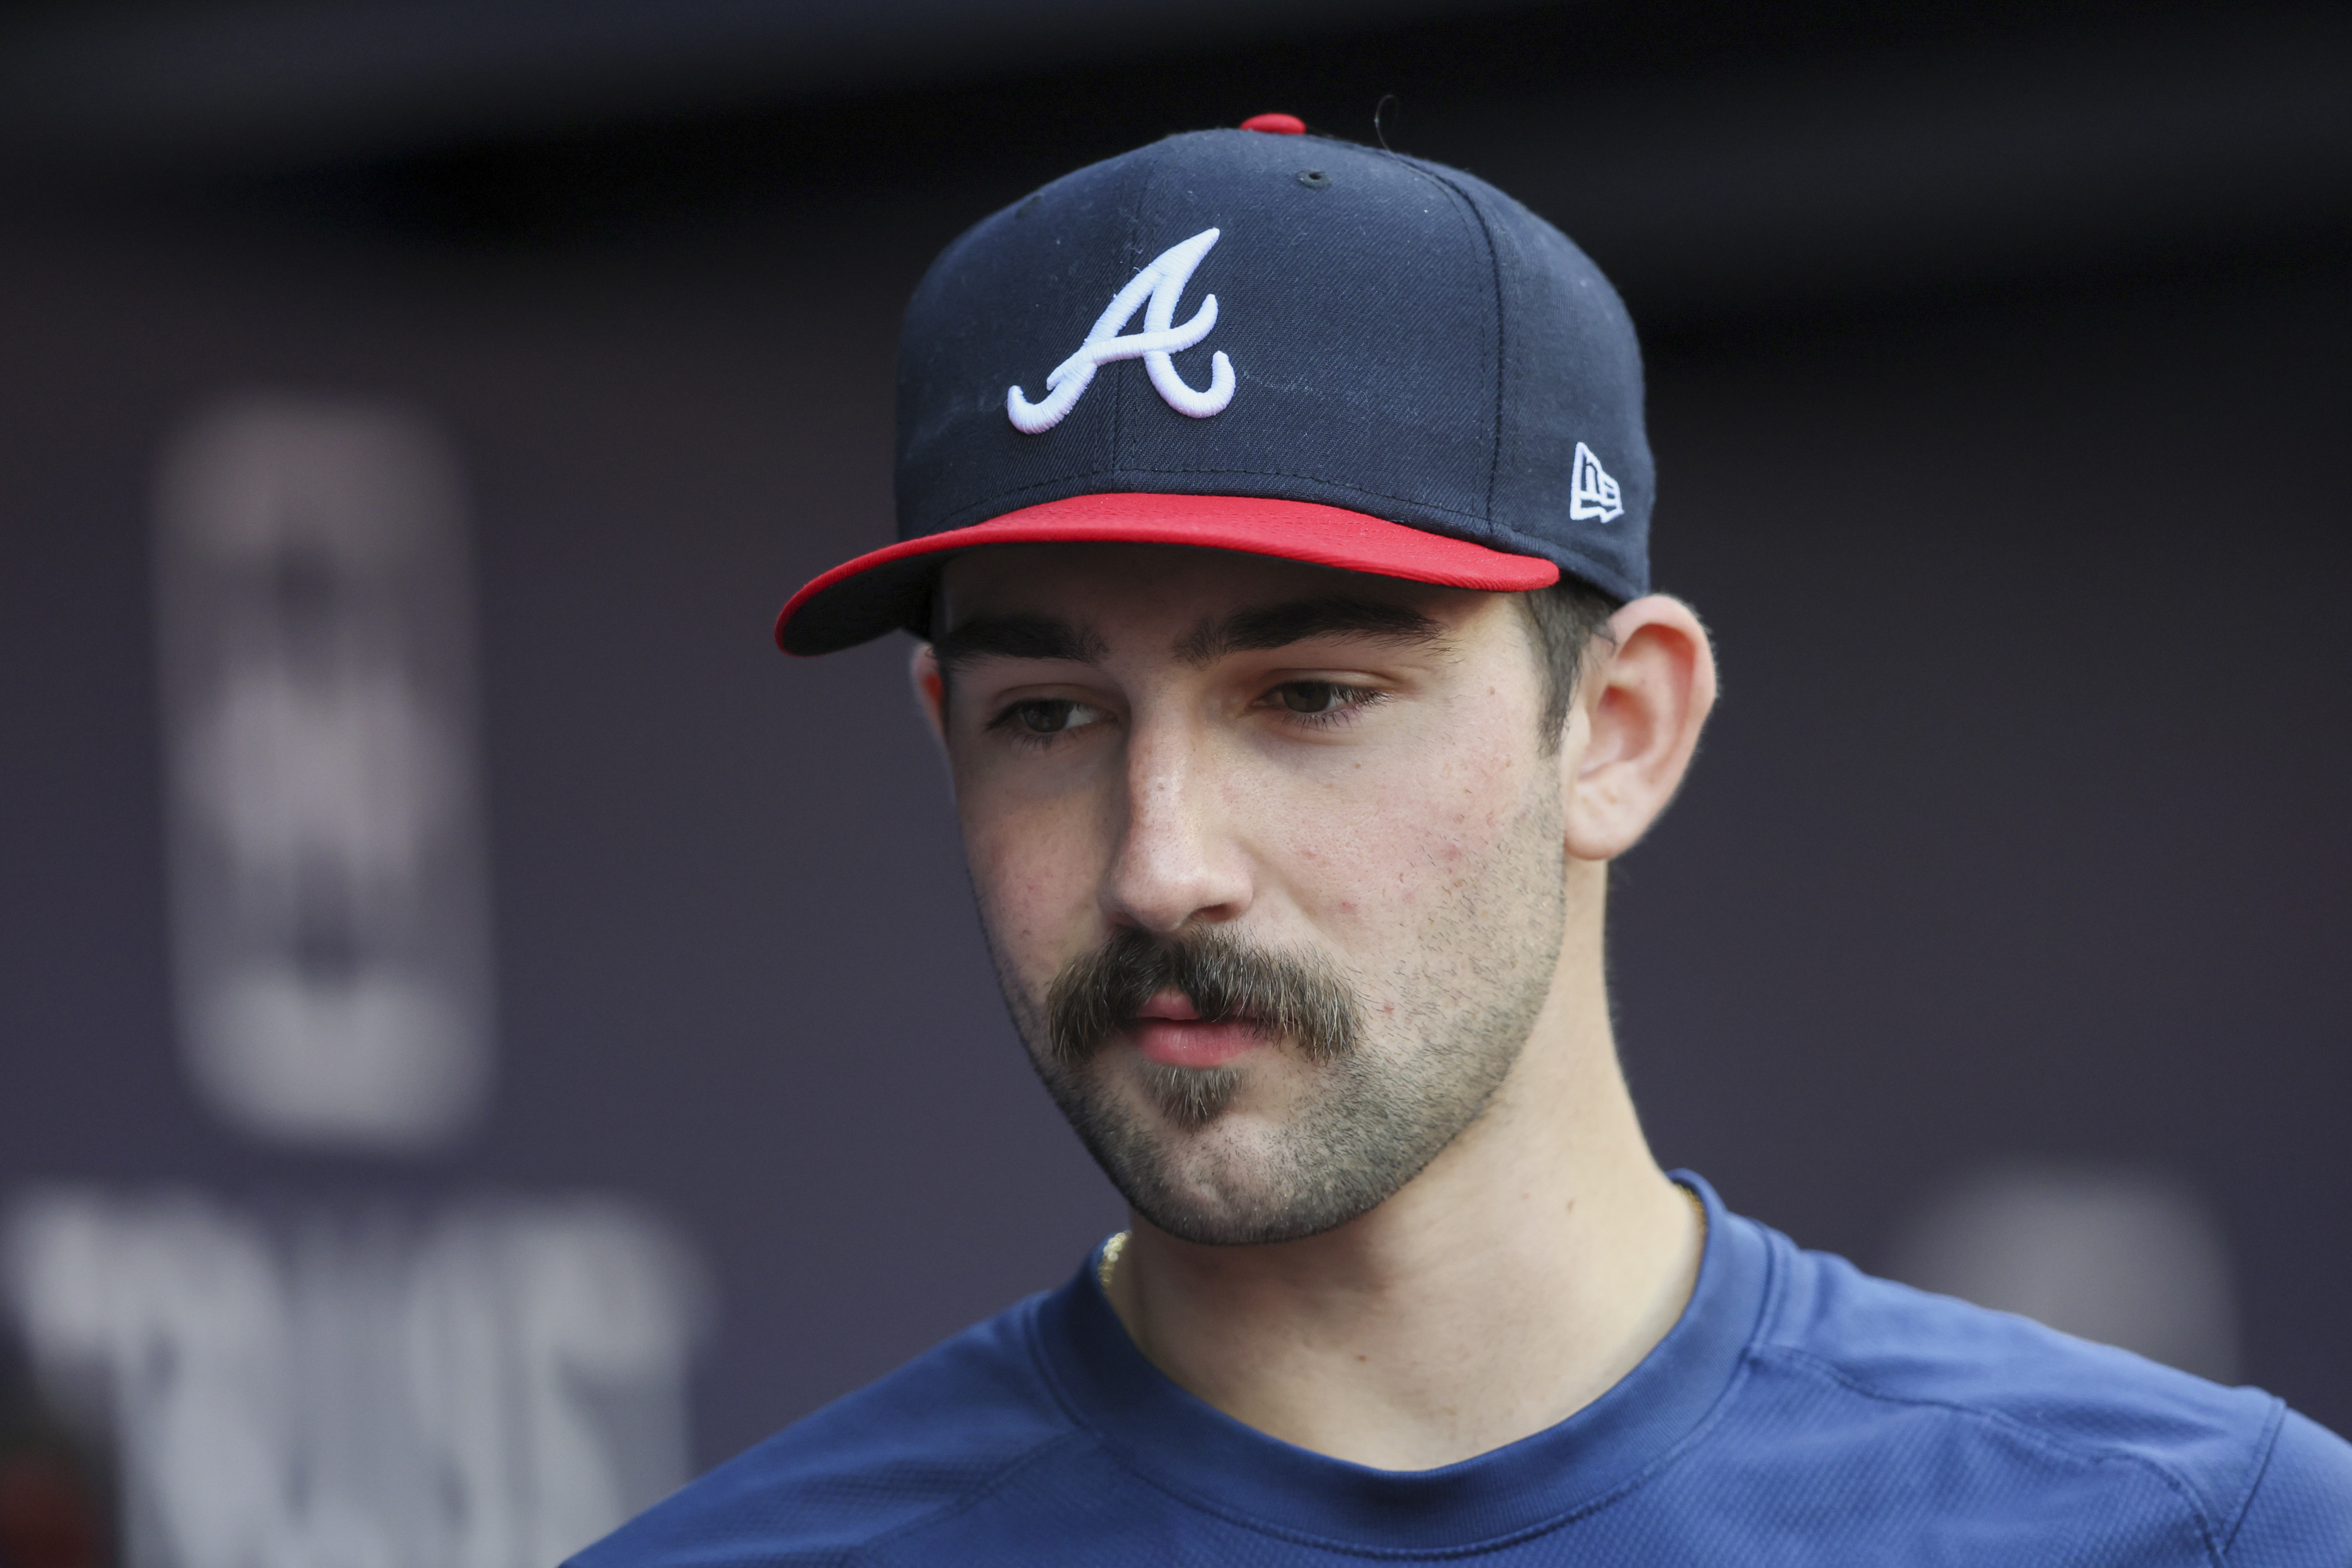 Braves: Spencer Strider - The Vegan Mustache Man